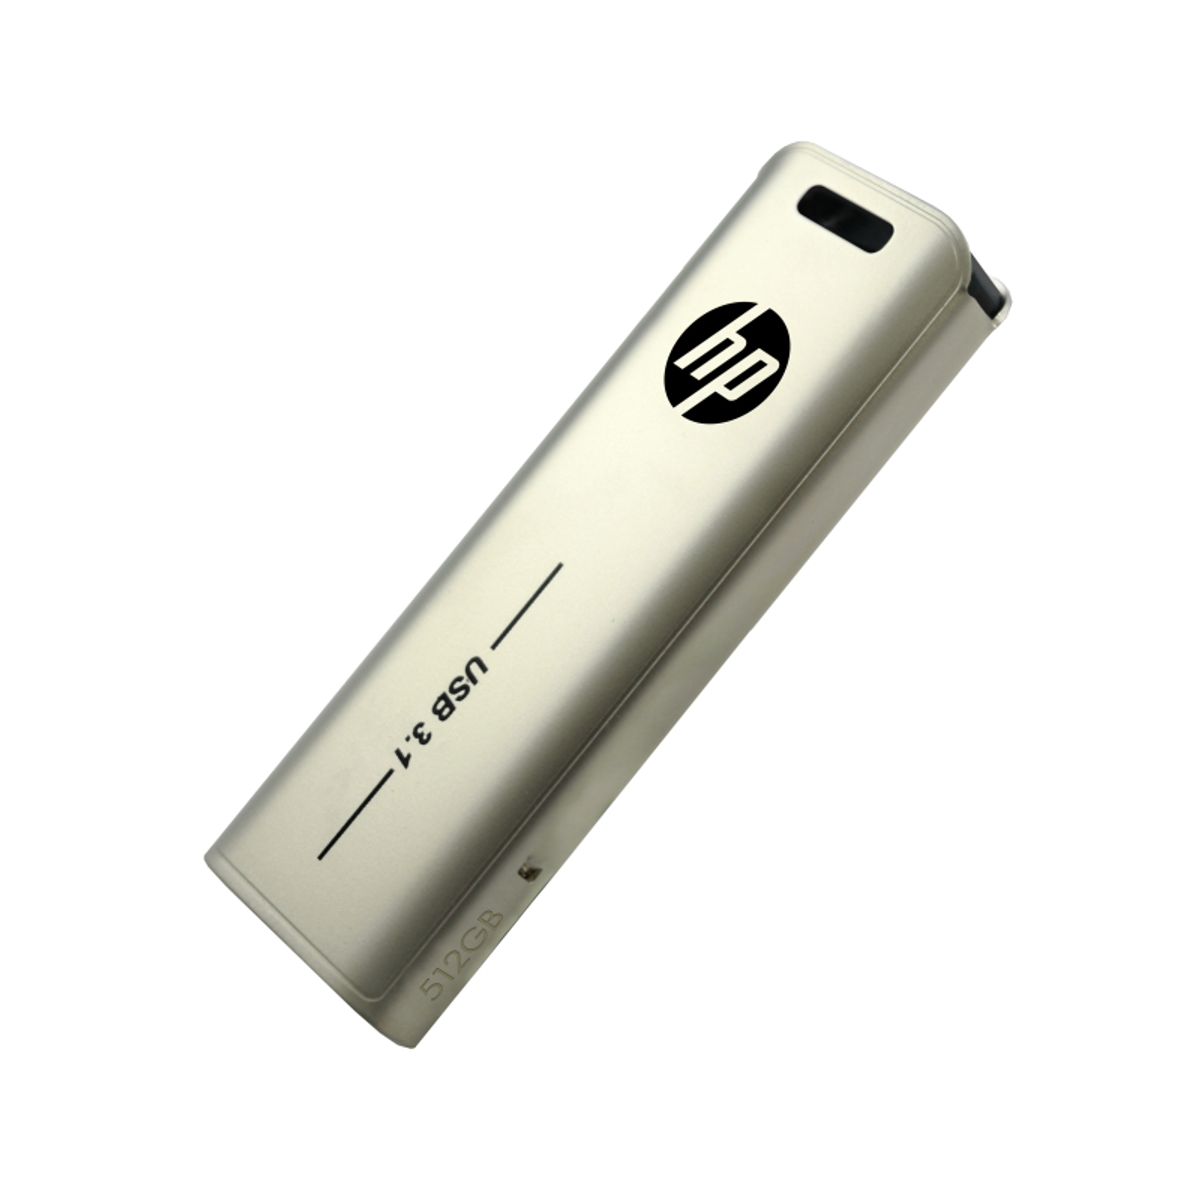 HP FD796L-512 (Silber, USB-Flash-Laufwerk 512 GB)